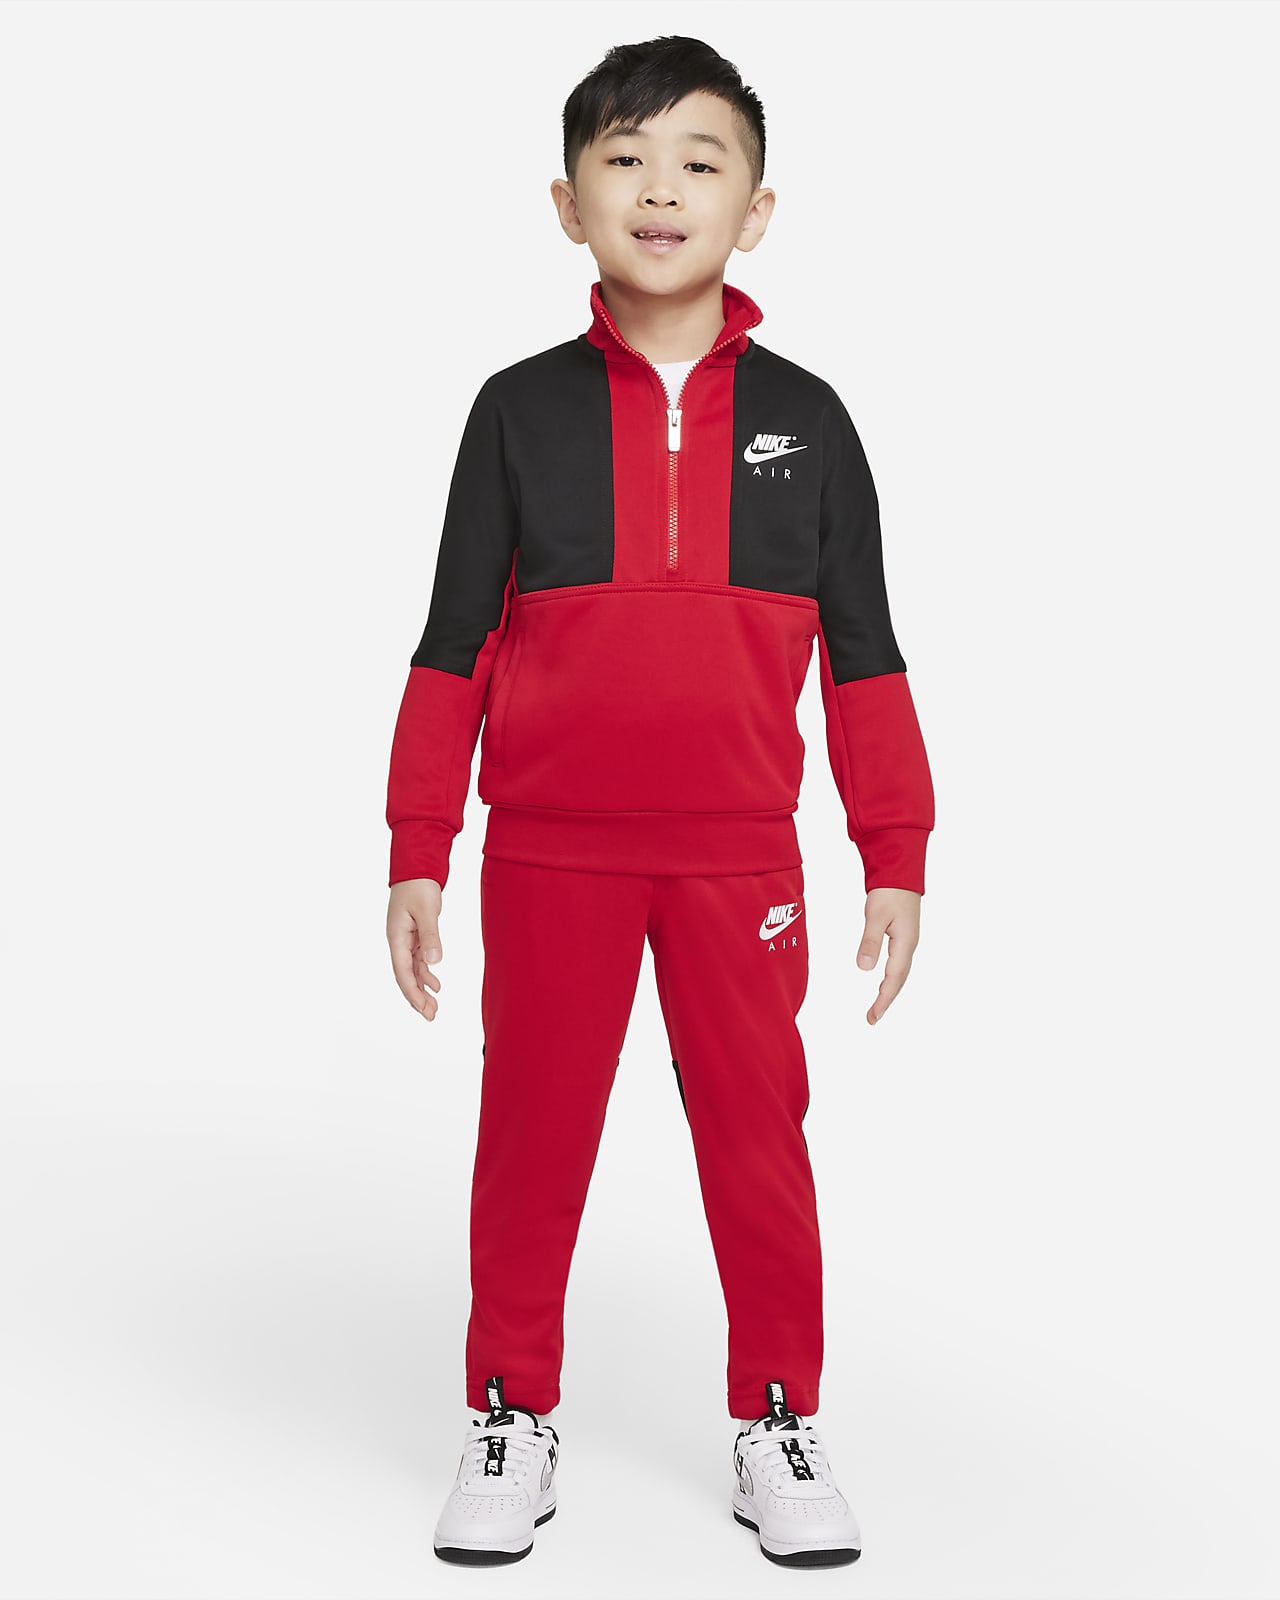 Survêtement Nike Air pour Jeune enfant. Nike LU